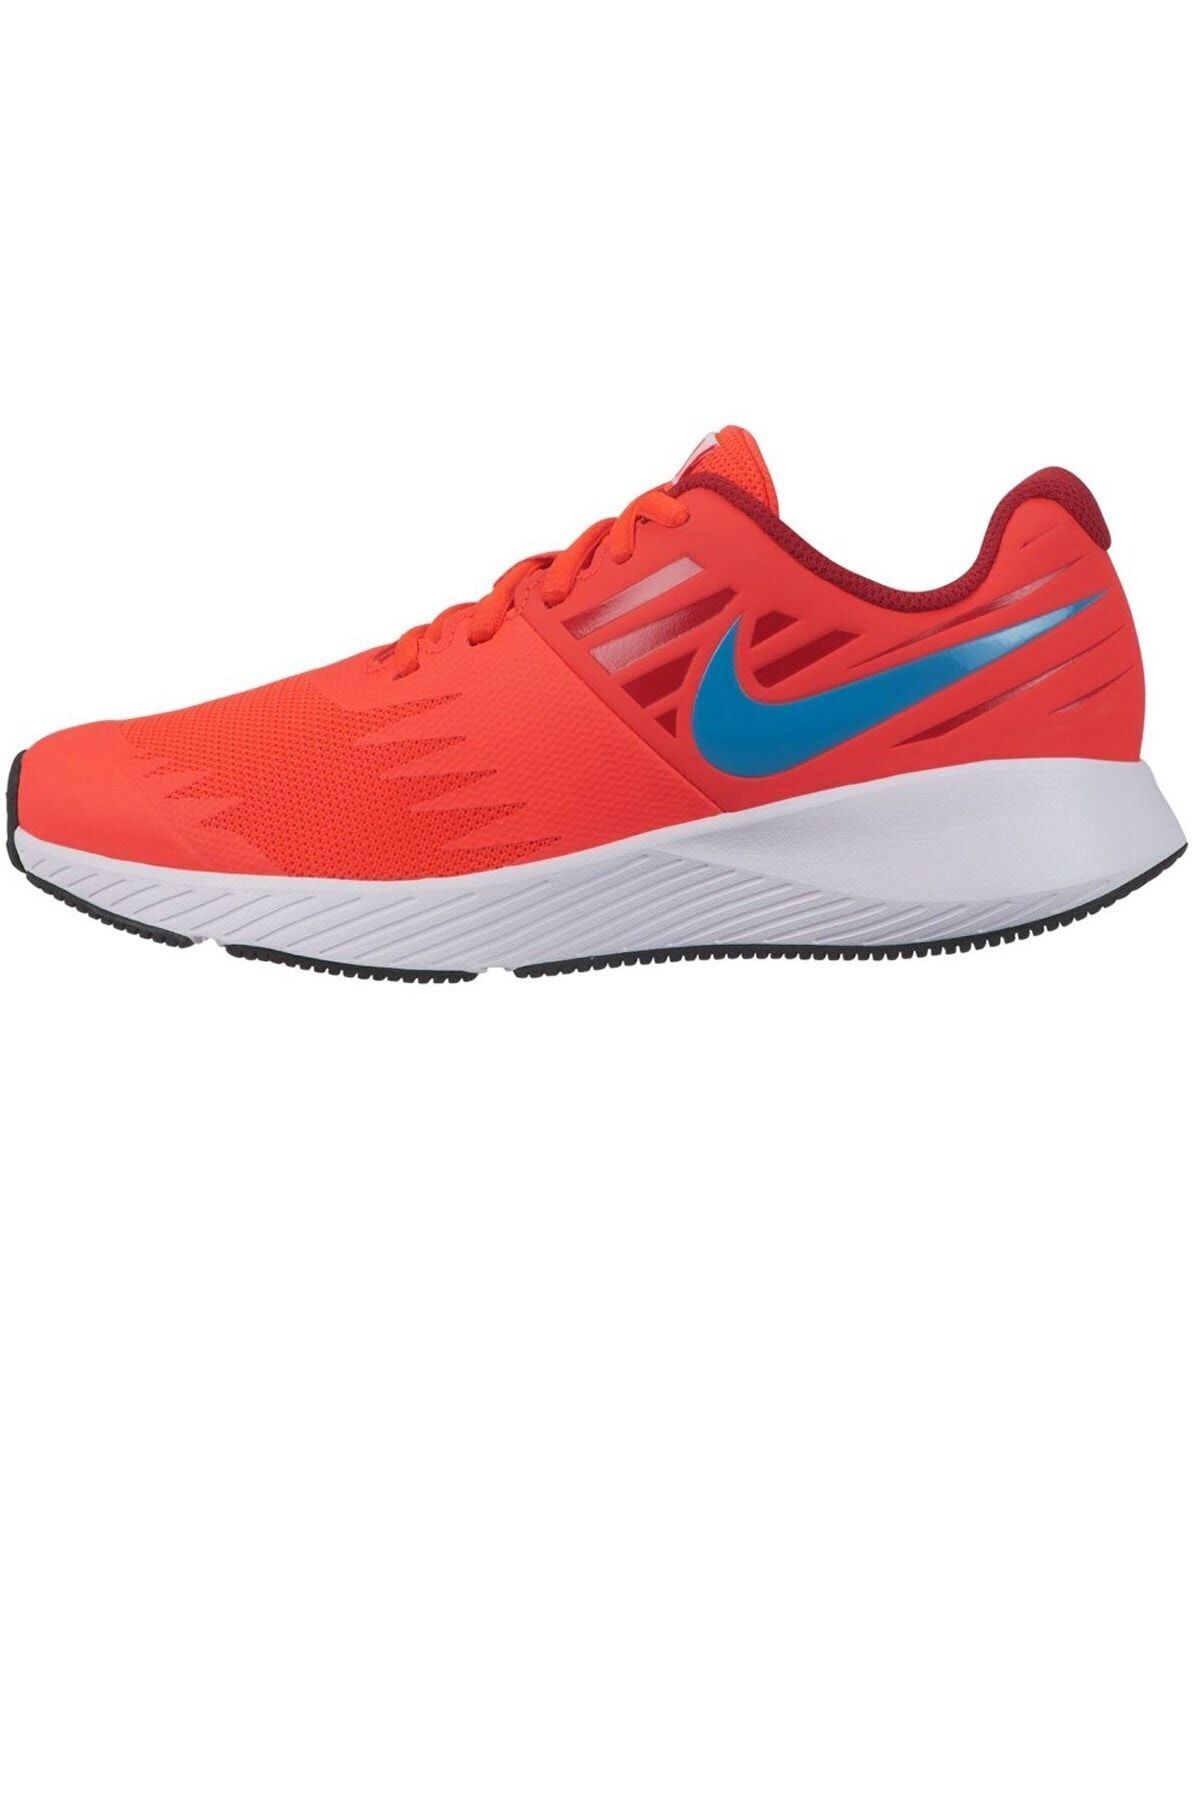 Nike Kadın Kırmızı Koşu Ayakkabısı 907254-603